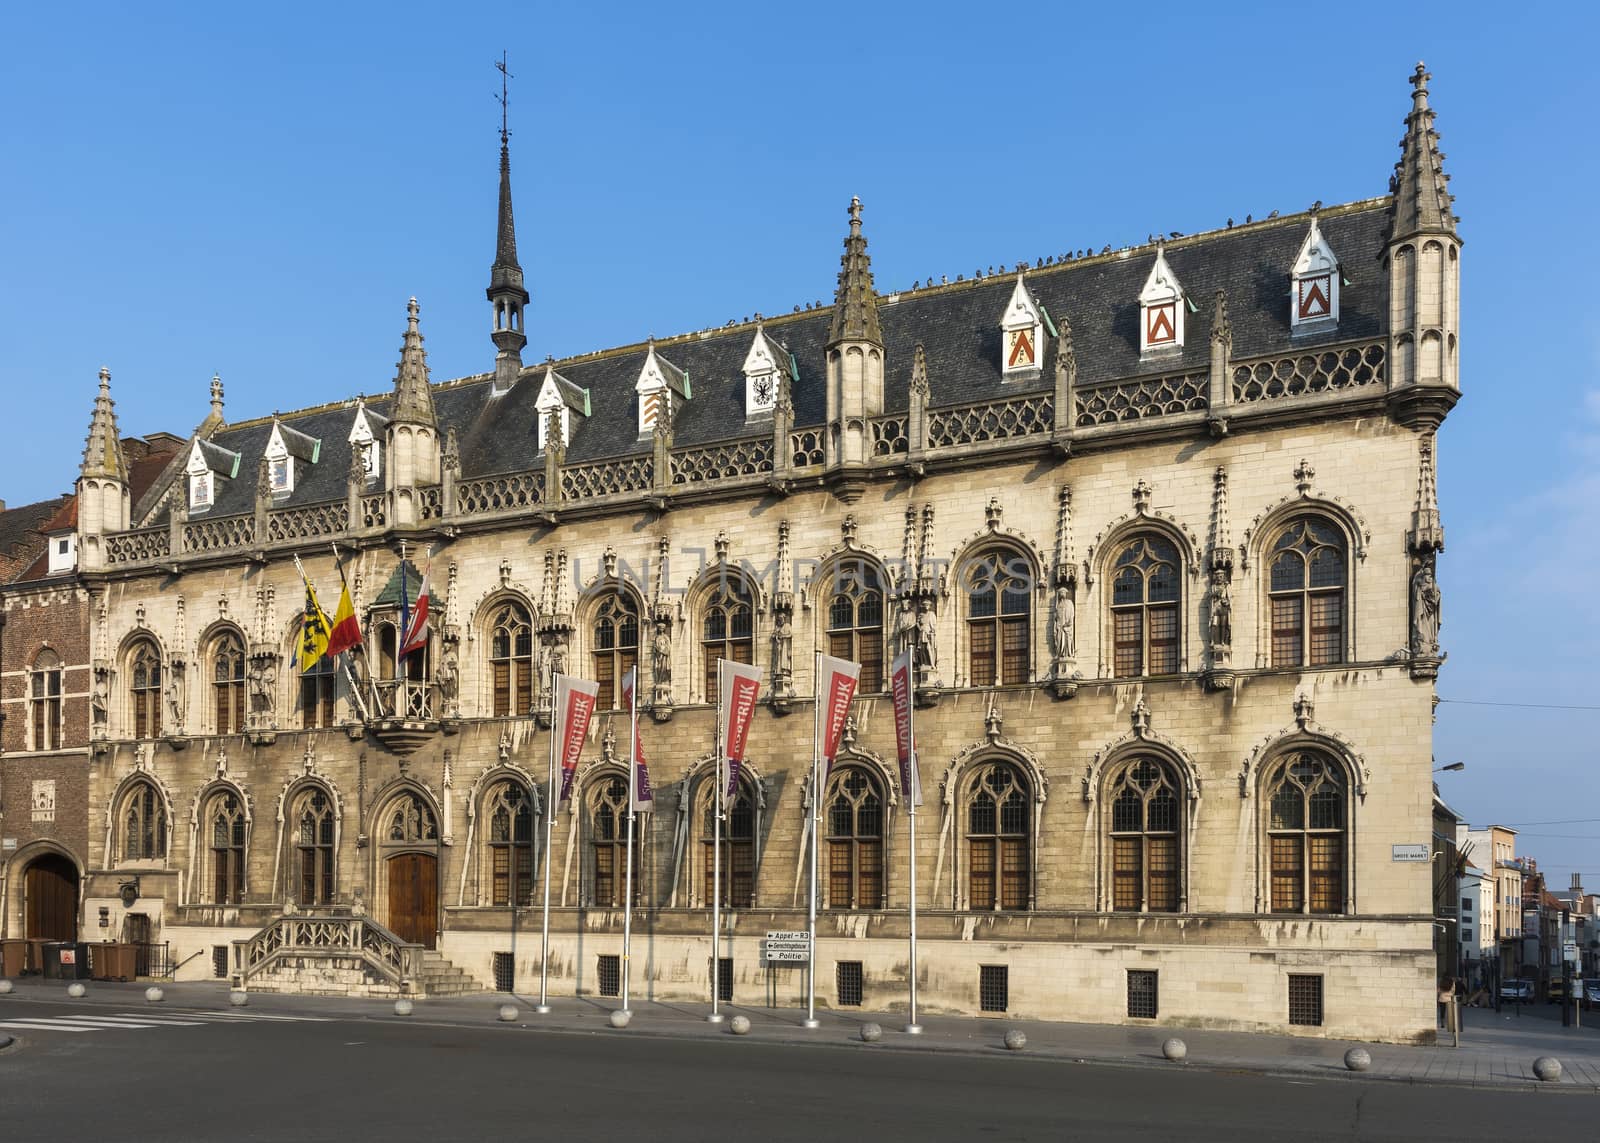 Town hall of Kortrijk, Belgium. by Claudine